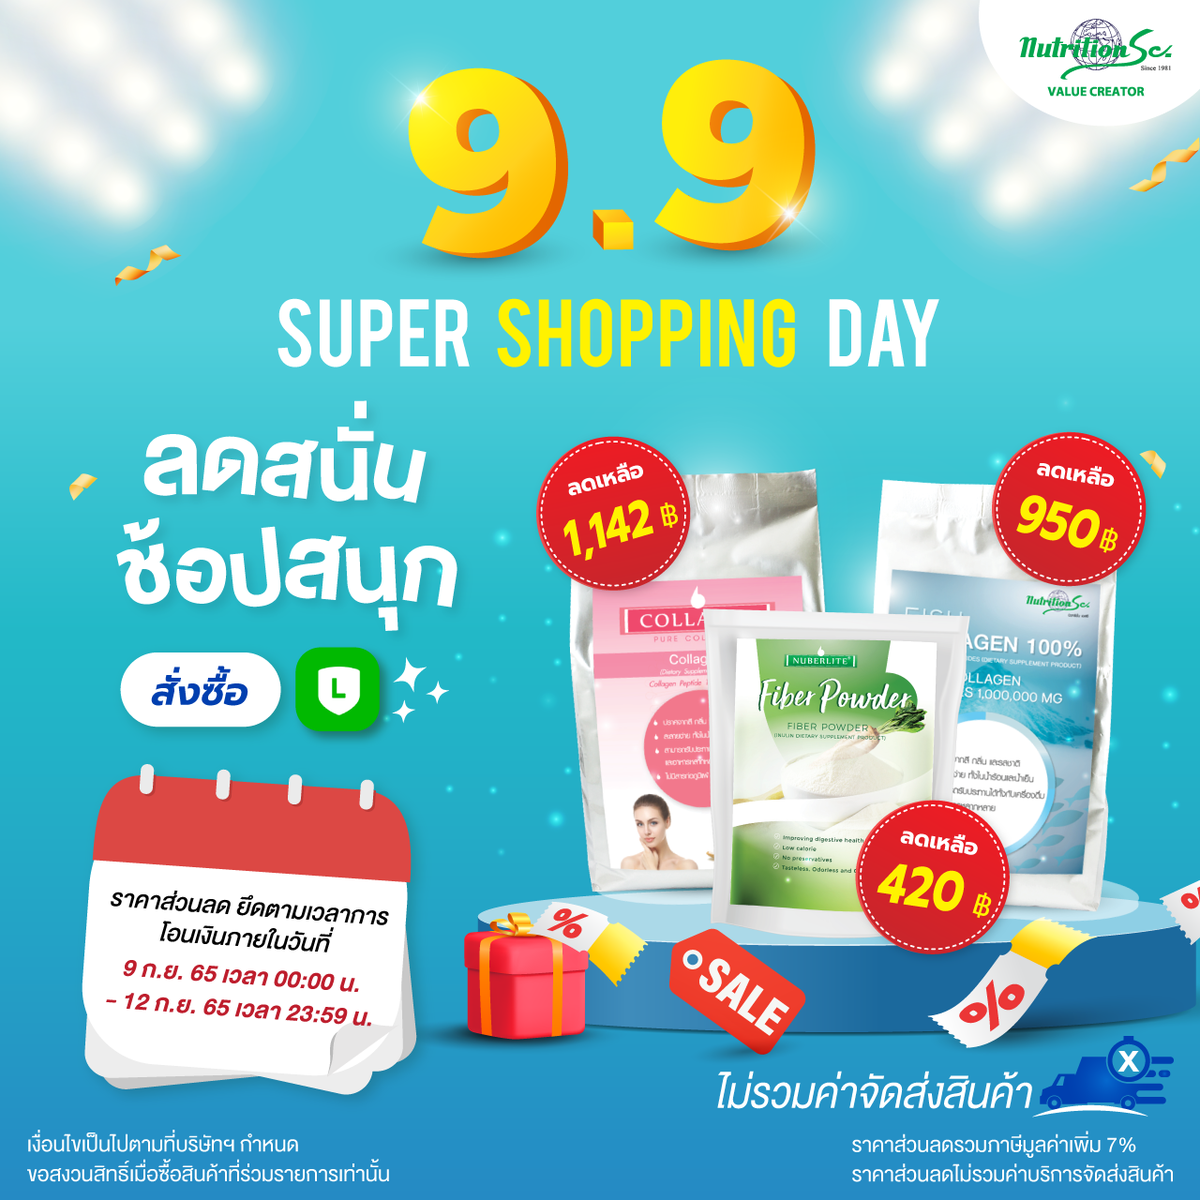 โปรโมชั่น 9.9 ที่ทุกคนรอคอย Super Shopping Day กับสินค้า Nuberlite จาก Nutrition SC Co.,Ltd.